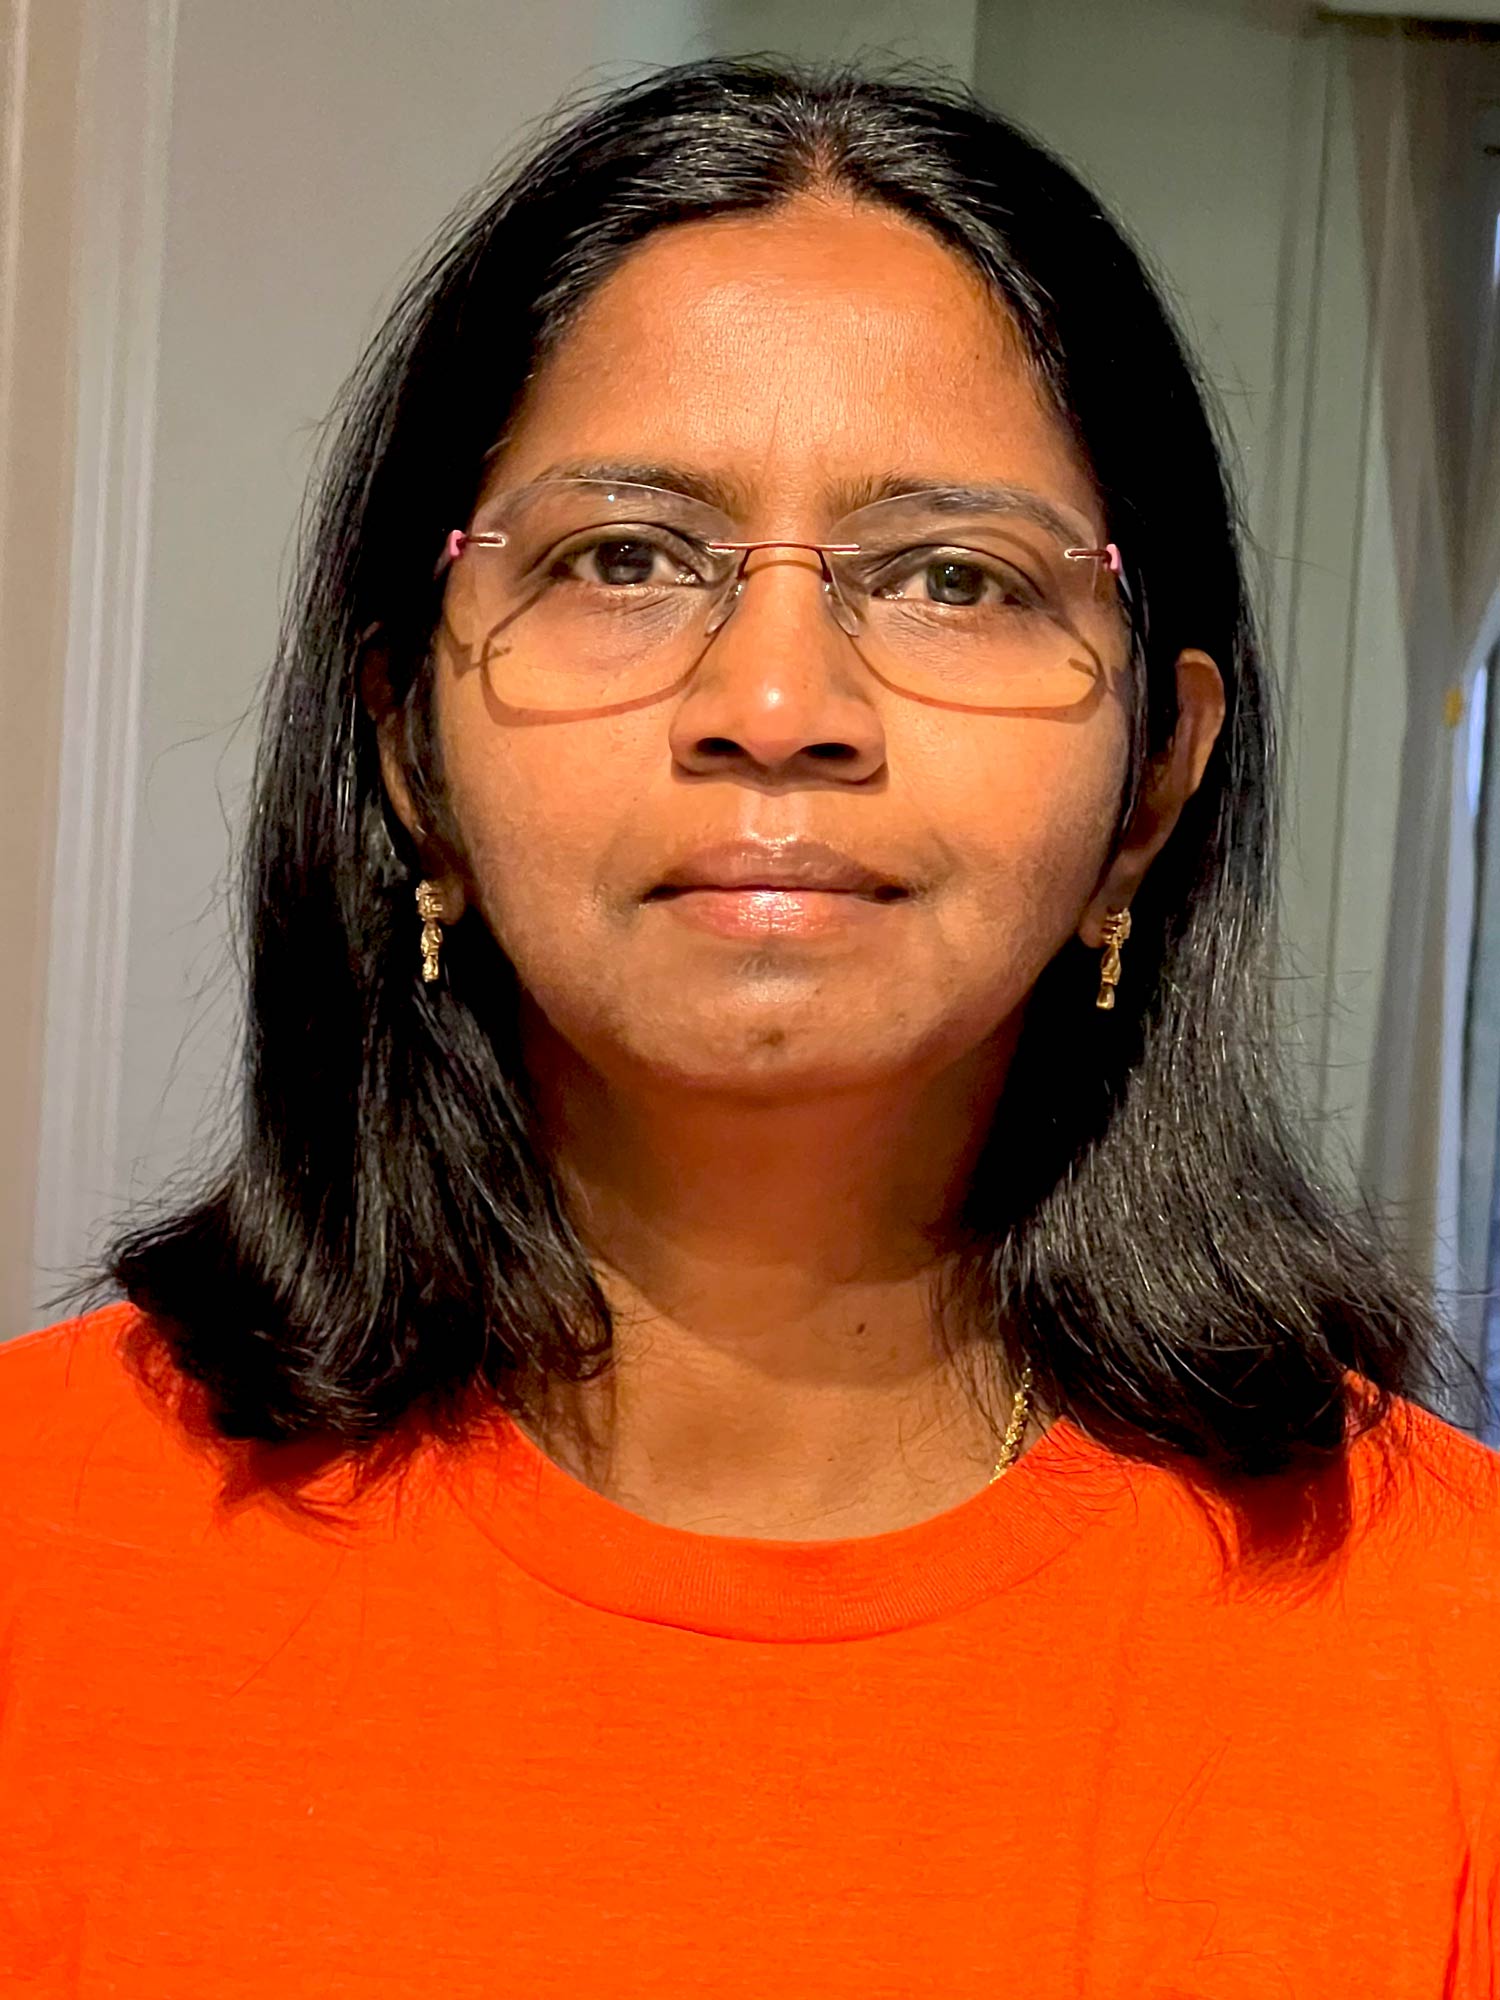 Shanthi Johnson wearing an orange shirt